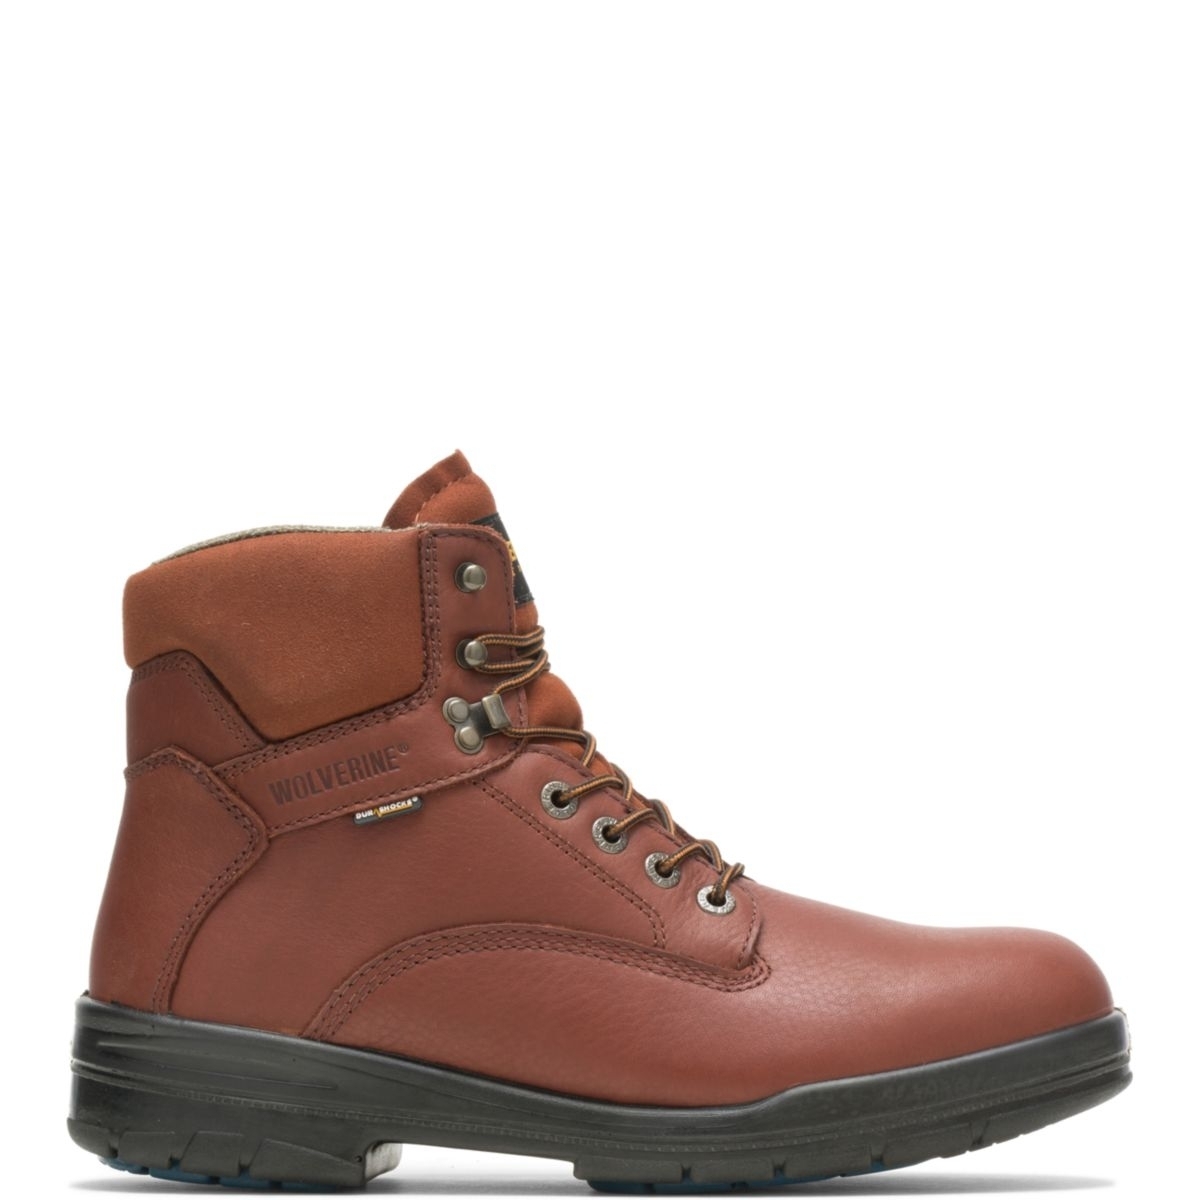 WOLVERINE Men's 6 DuraShocksÂ® Steel Toe Direct-Attach Work Boot Brown - W03120 BROWN - BROWN, 14